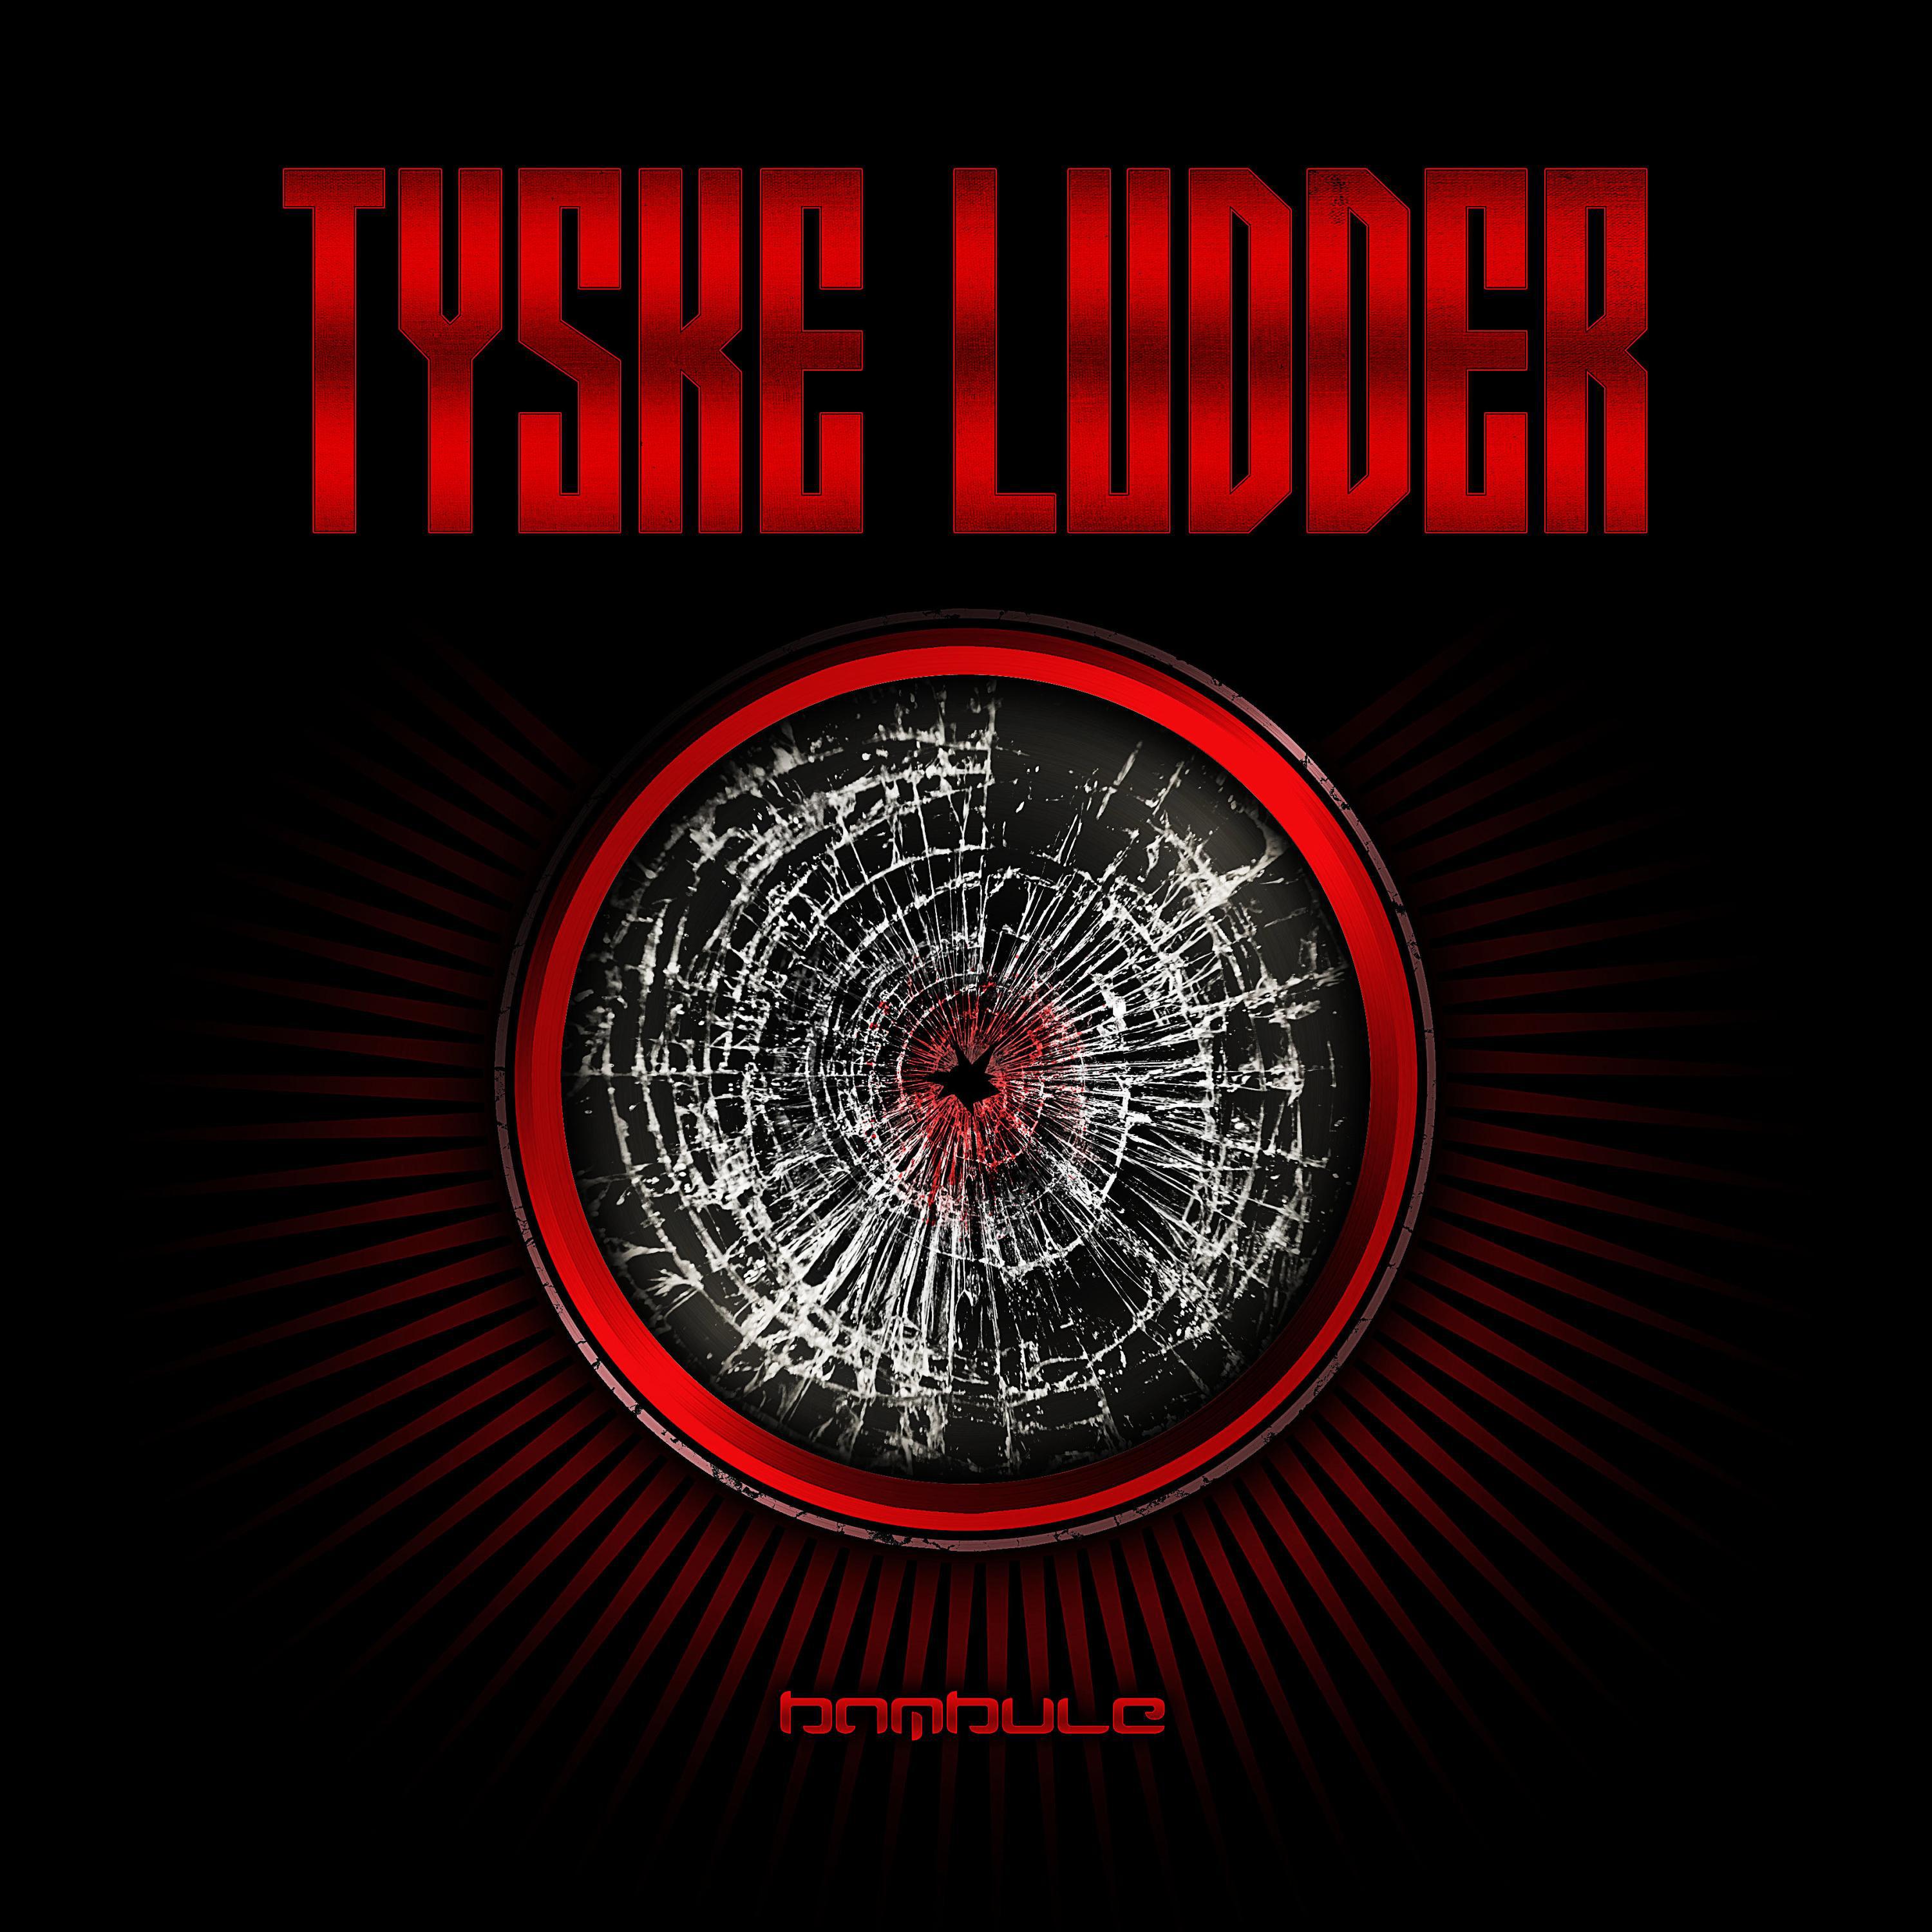 Tyske Ludder - Bambule (Harmjoy Remix Harmbule-Mix)